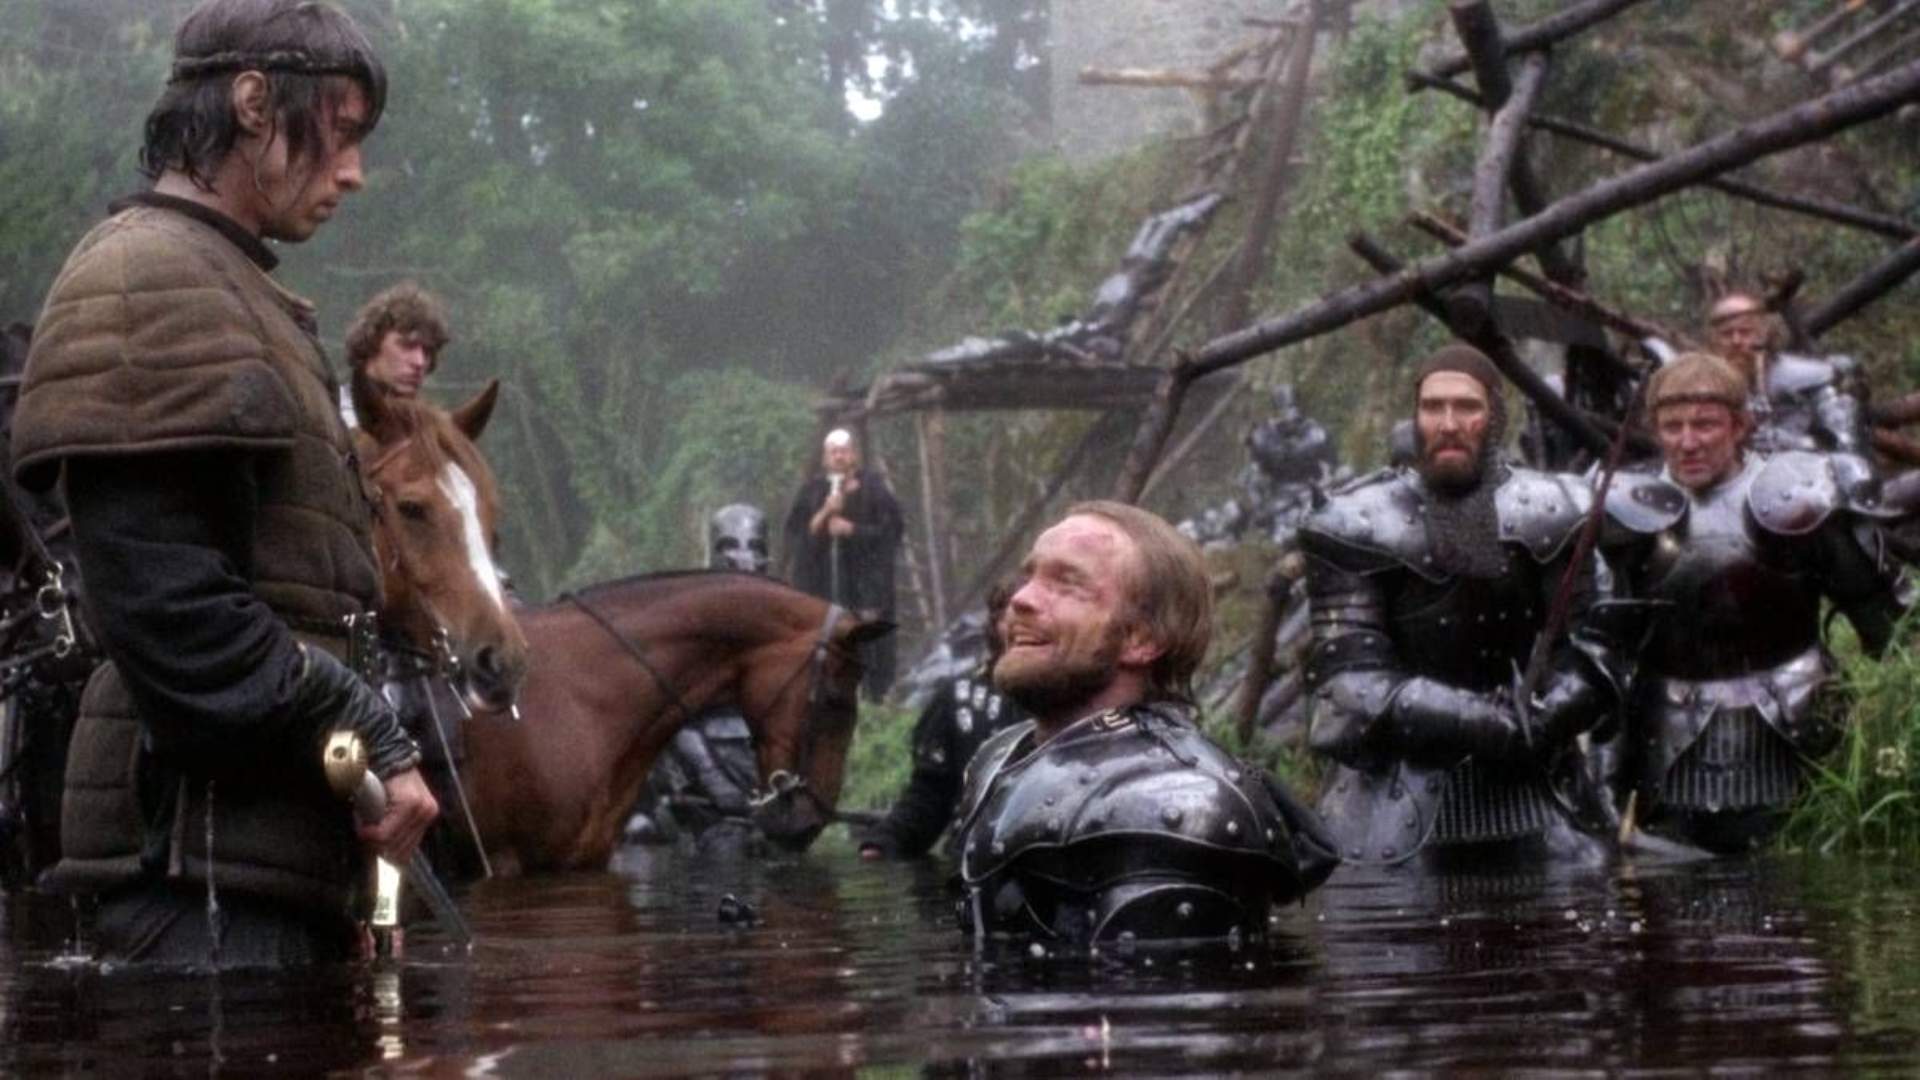 سربازانی با زره مخصوص در آب مقابل نایجل تری در فیلم Excalibur